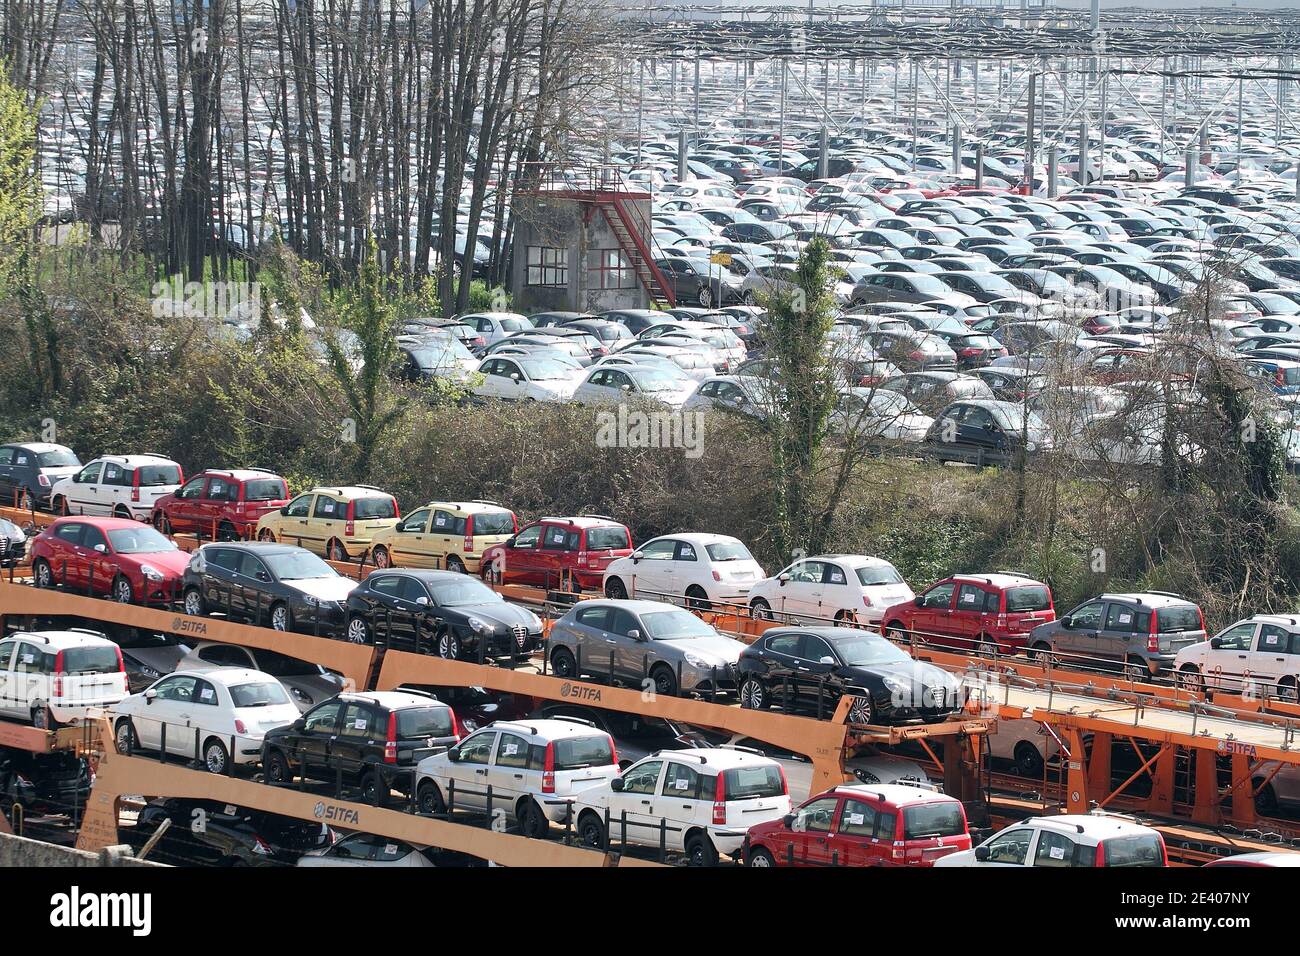 Cassino - Italia - 24 marzo 2013: Le Fiat Panda e le Alfa Romeo prodotti nello stabilizzatore di Cassino nel parcheggio auto-dice per essere distributiva Foto Stock